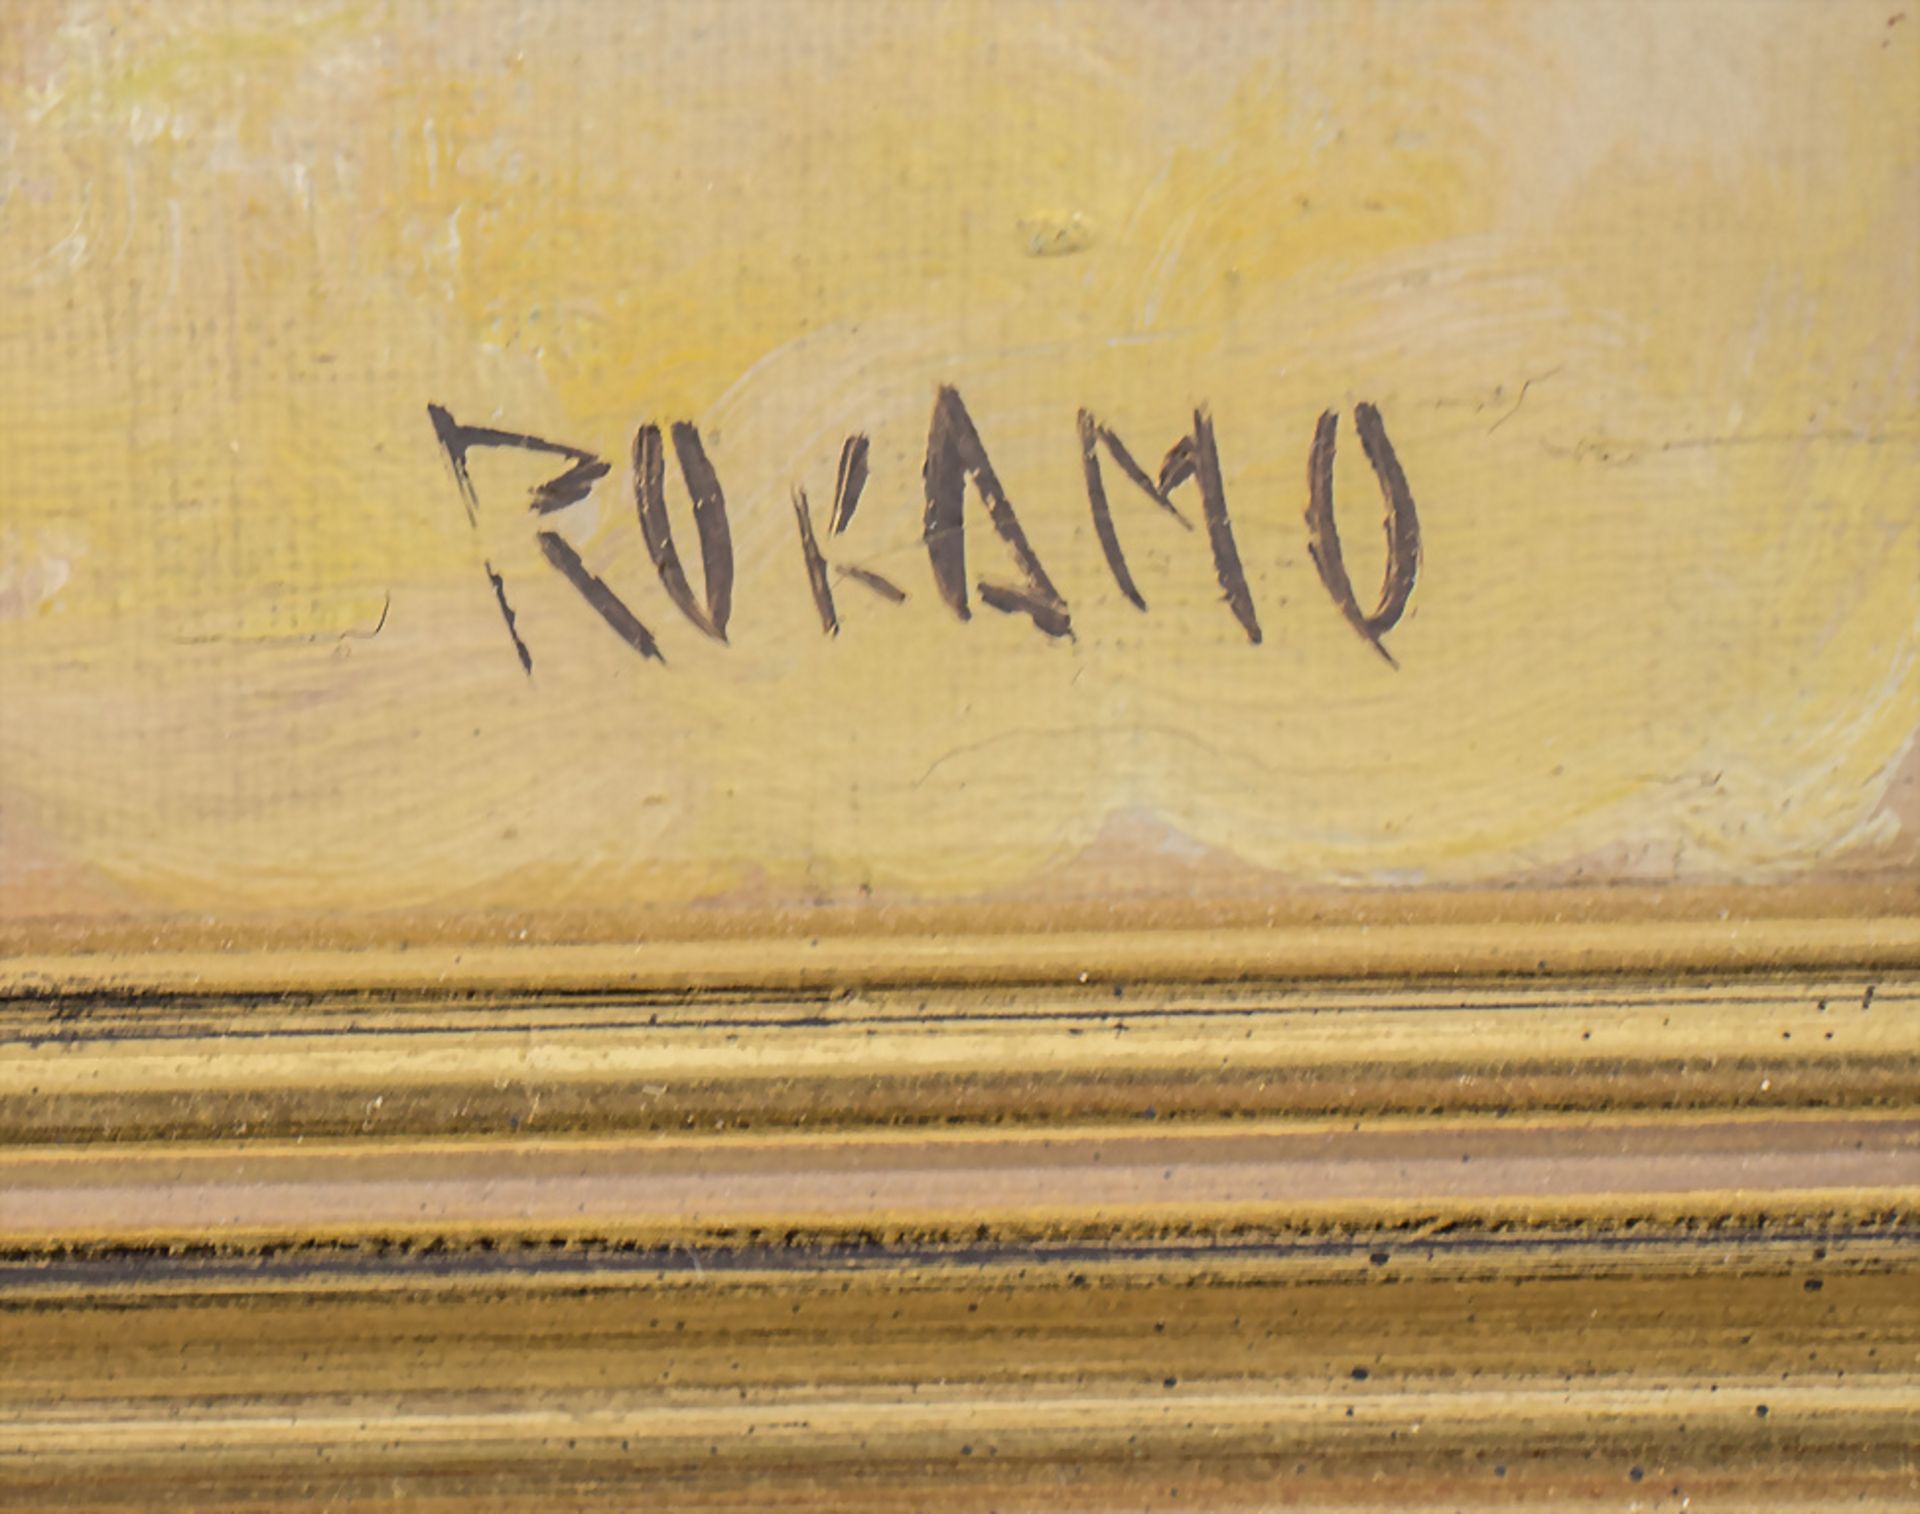 Monogrammist 'Rokamo', 'Auf dem Markt' / 'At the market', Indonesien, 20. Jh. - Bild 3 aus 5